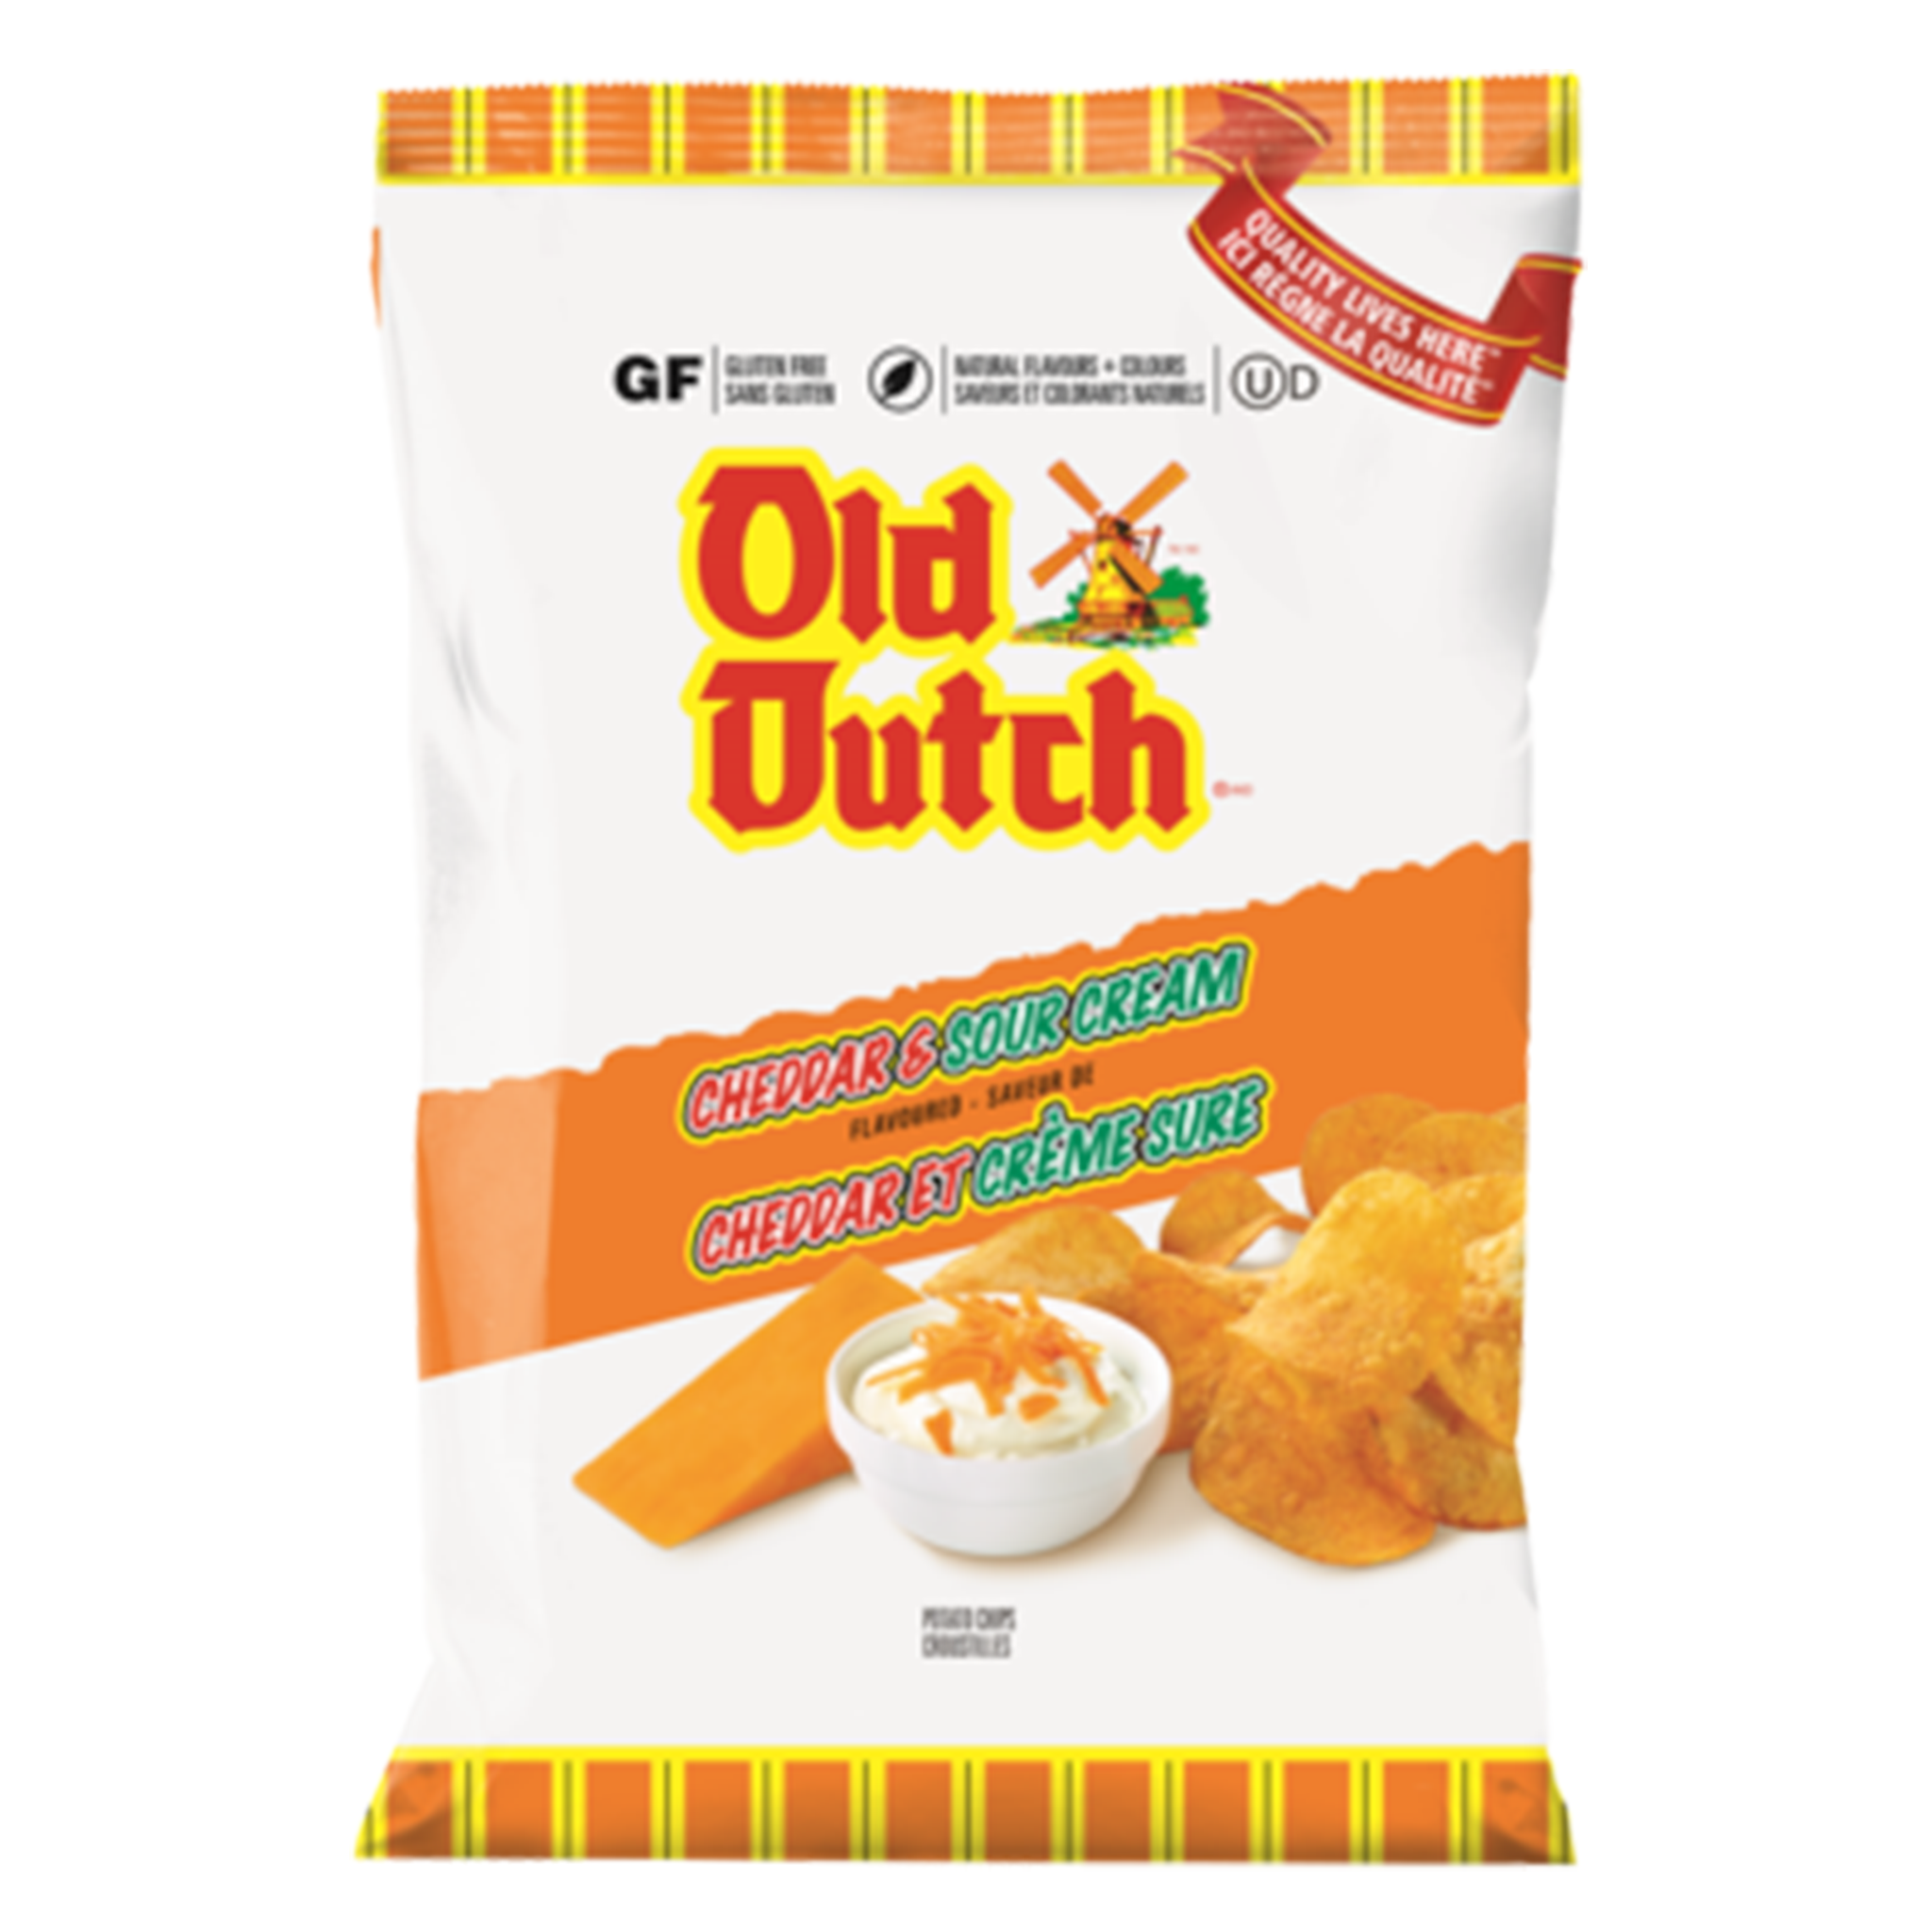 Old Dutch - Cheddar & Sour Cream